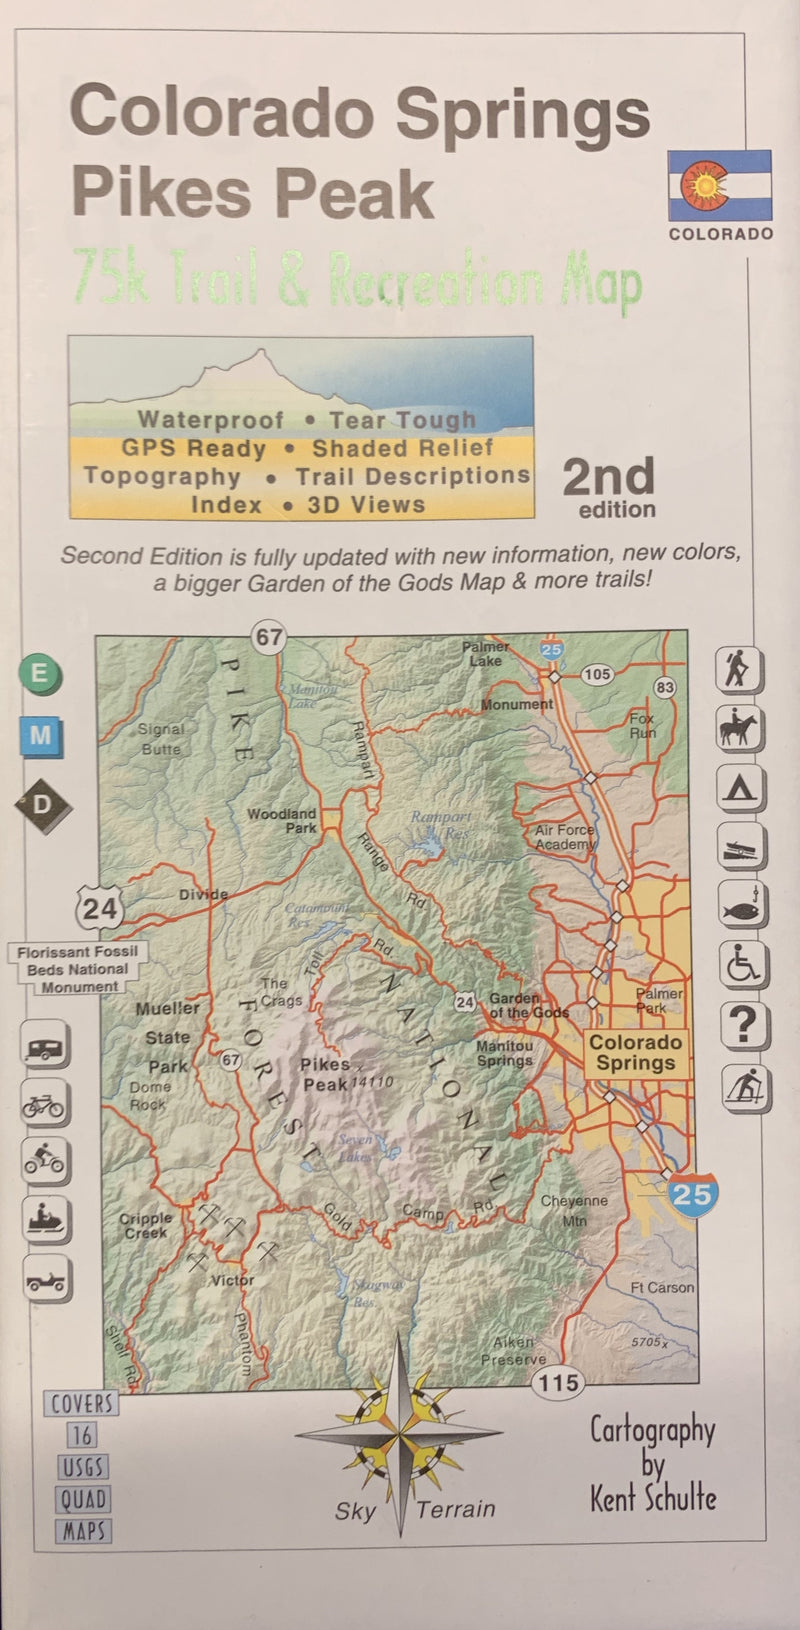 Colorado Springs/Pikes Peak Hiking Map